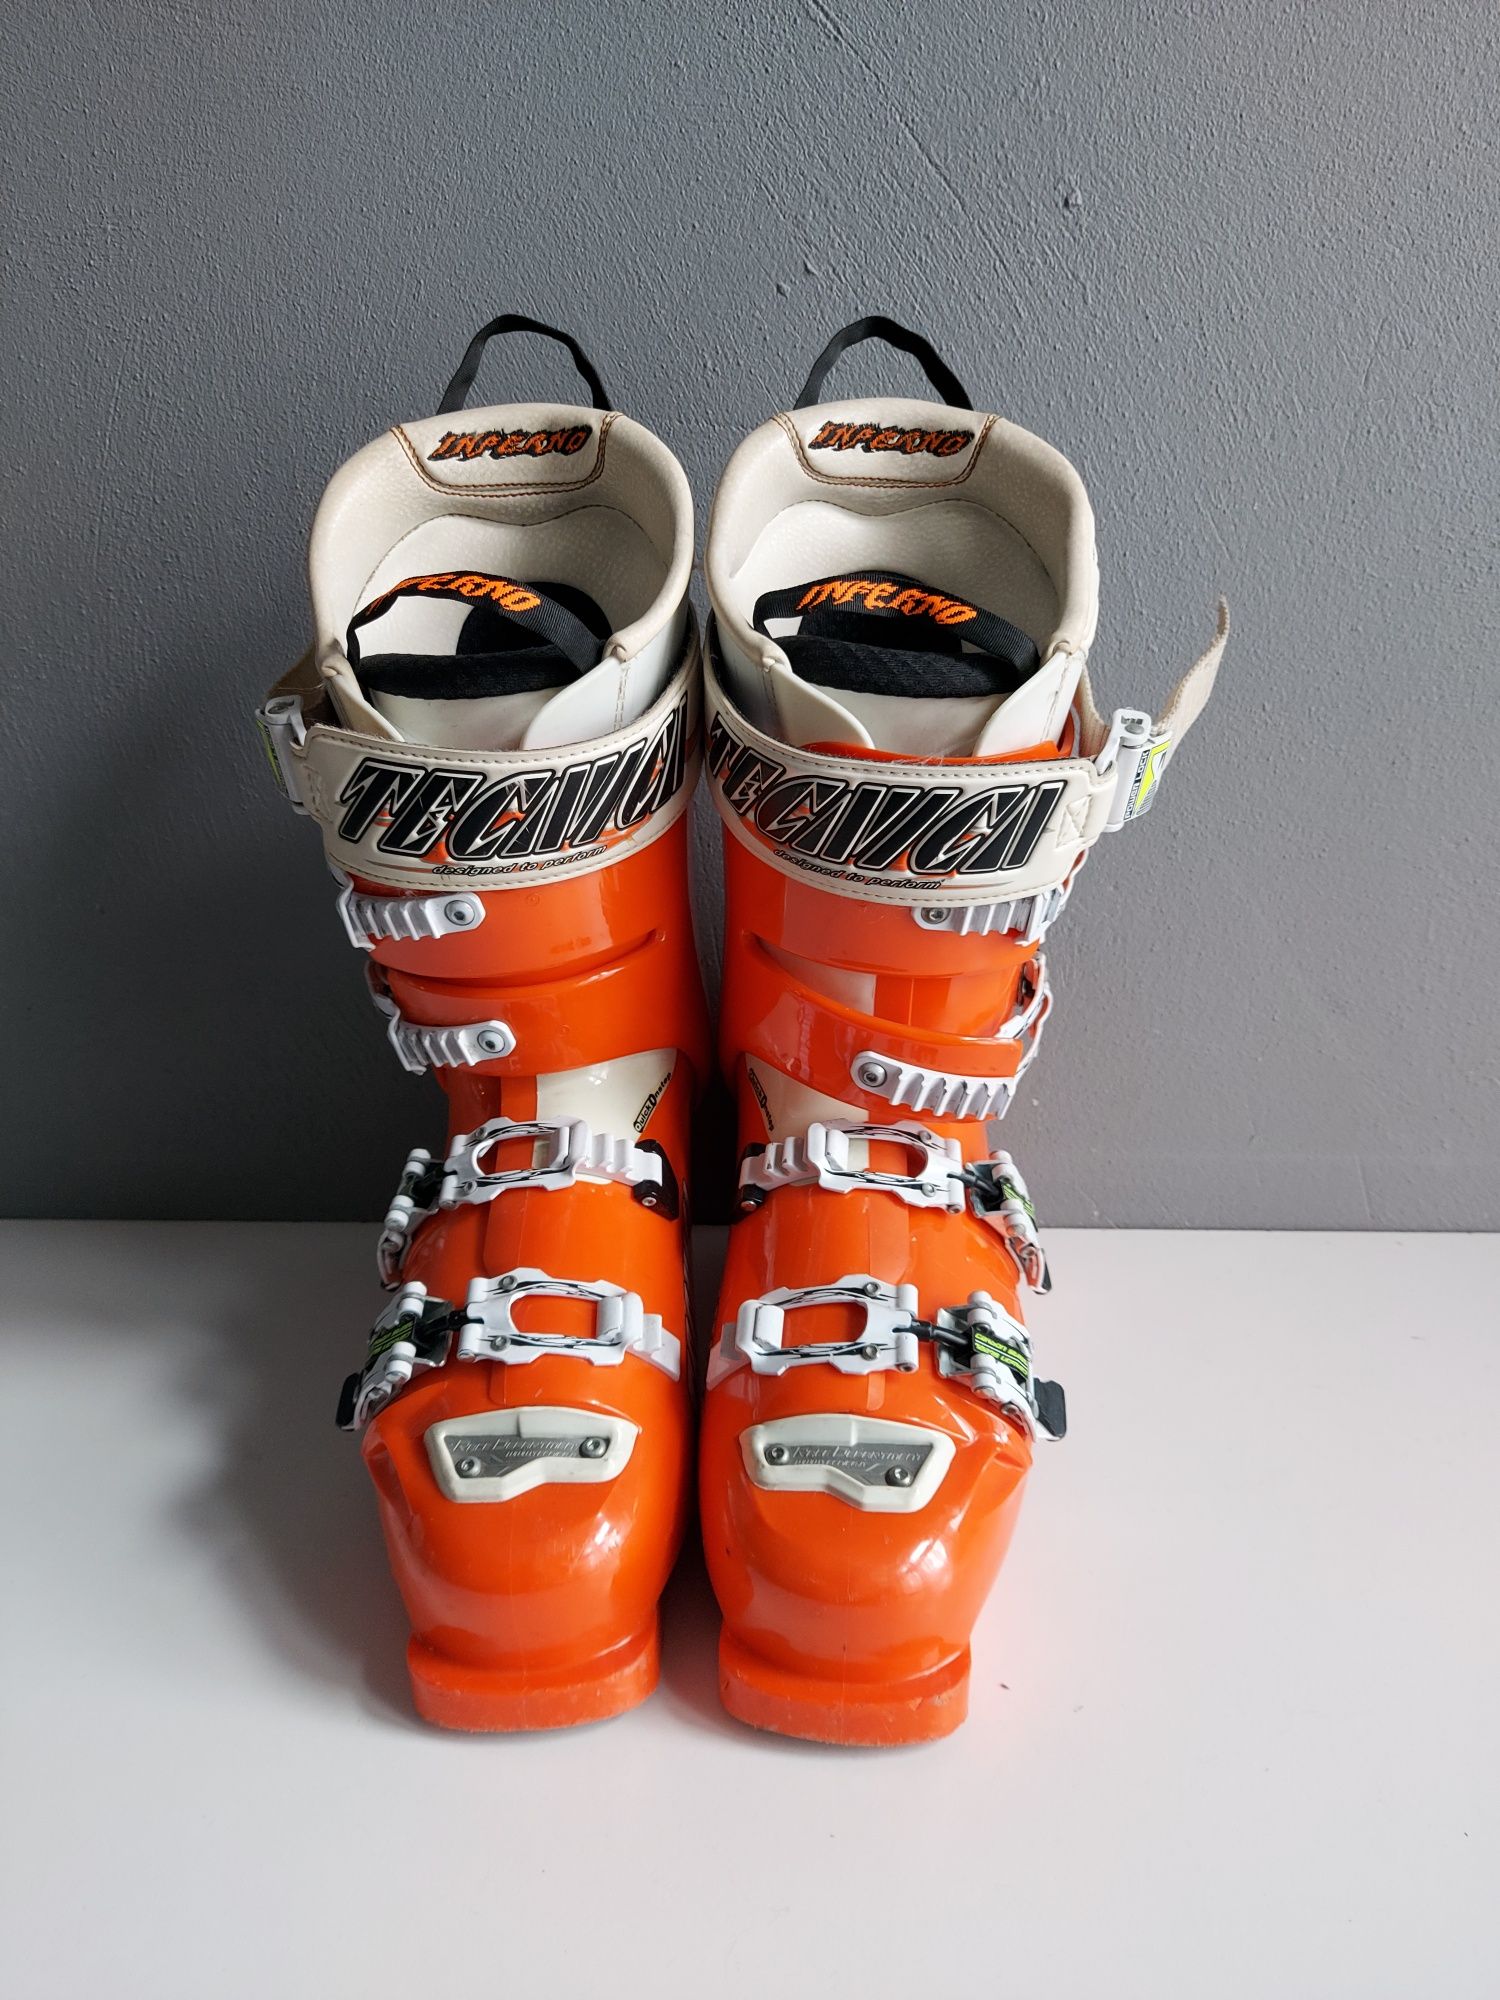 Buty narciarskie TECHNICA Diablo Inferno 130 rozmiar wkładki 26cm